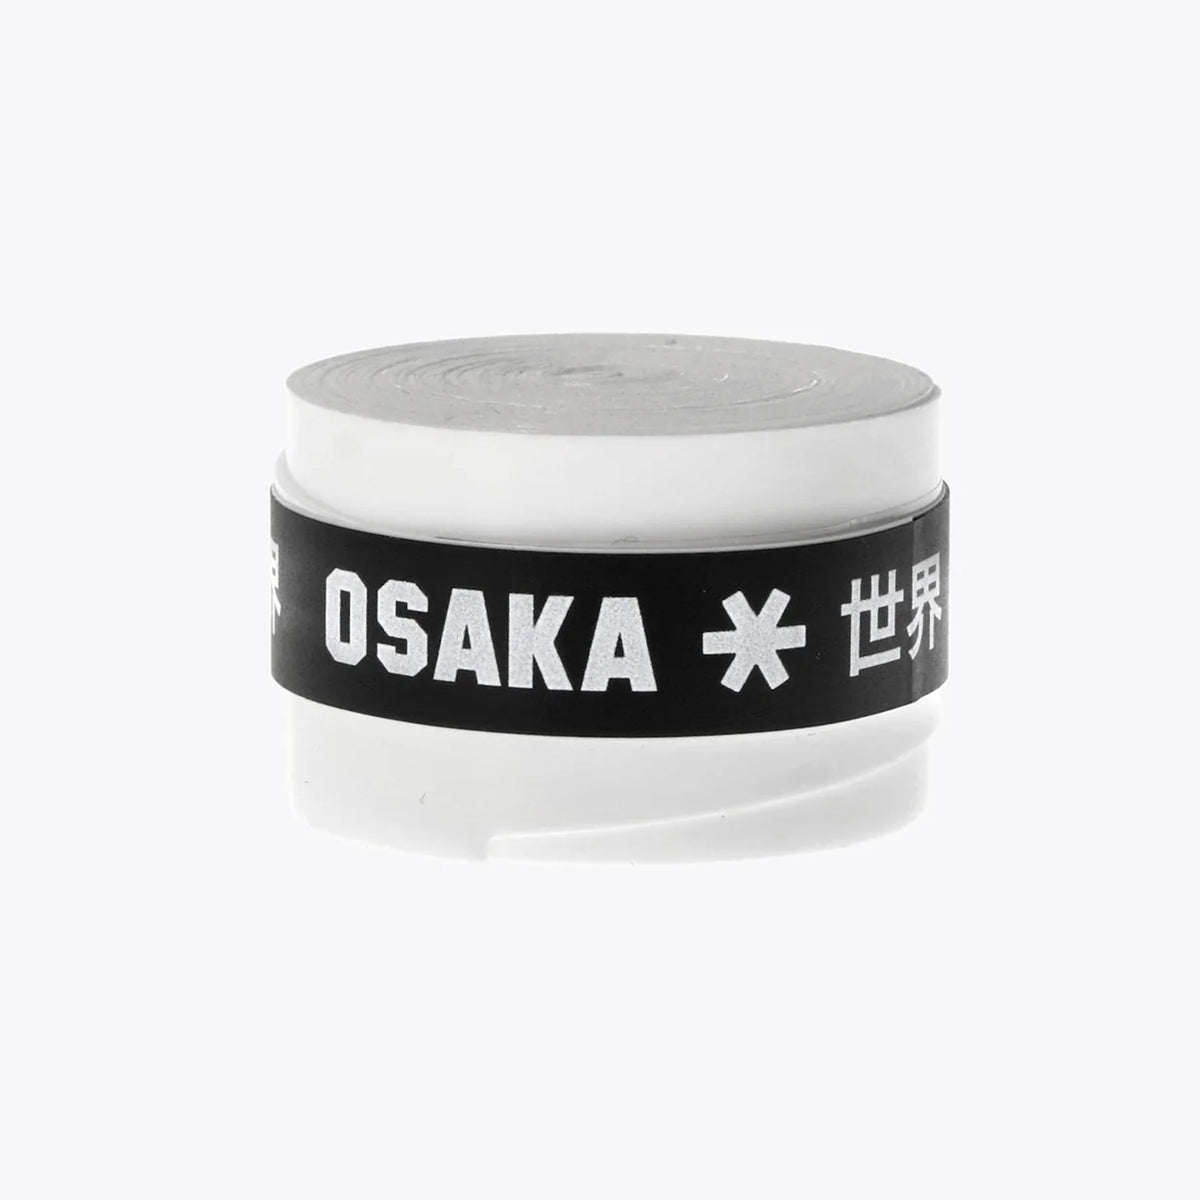 Osaka Hockey Overgrip: White